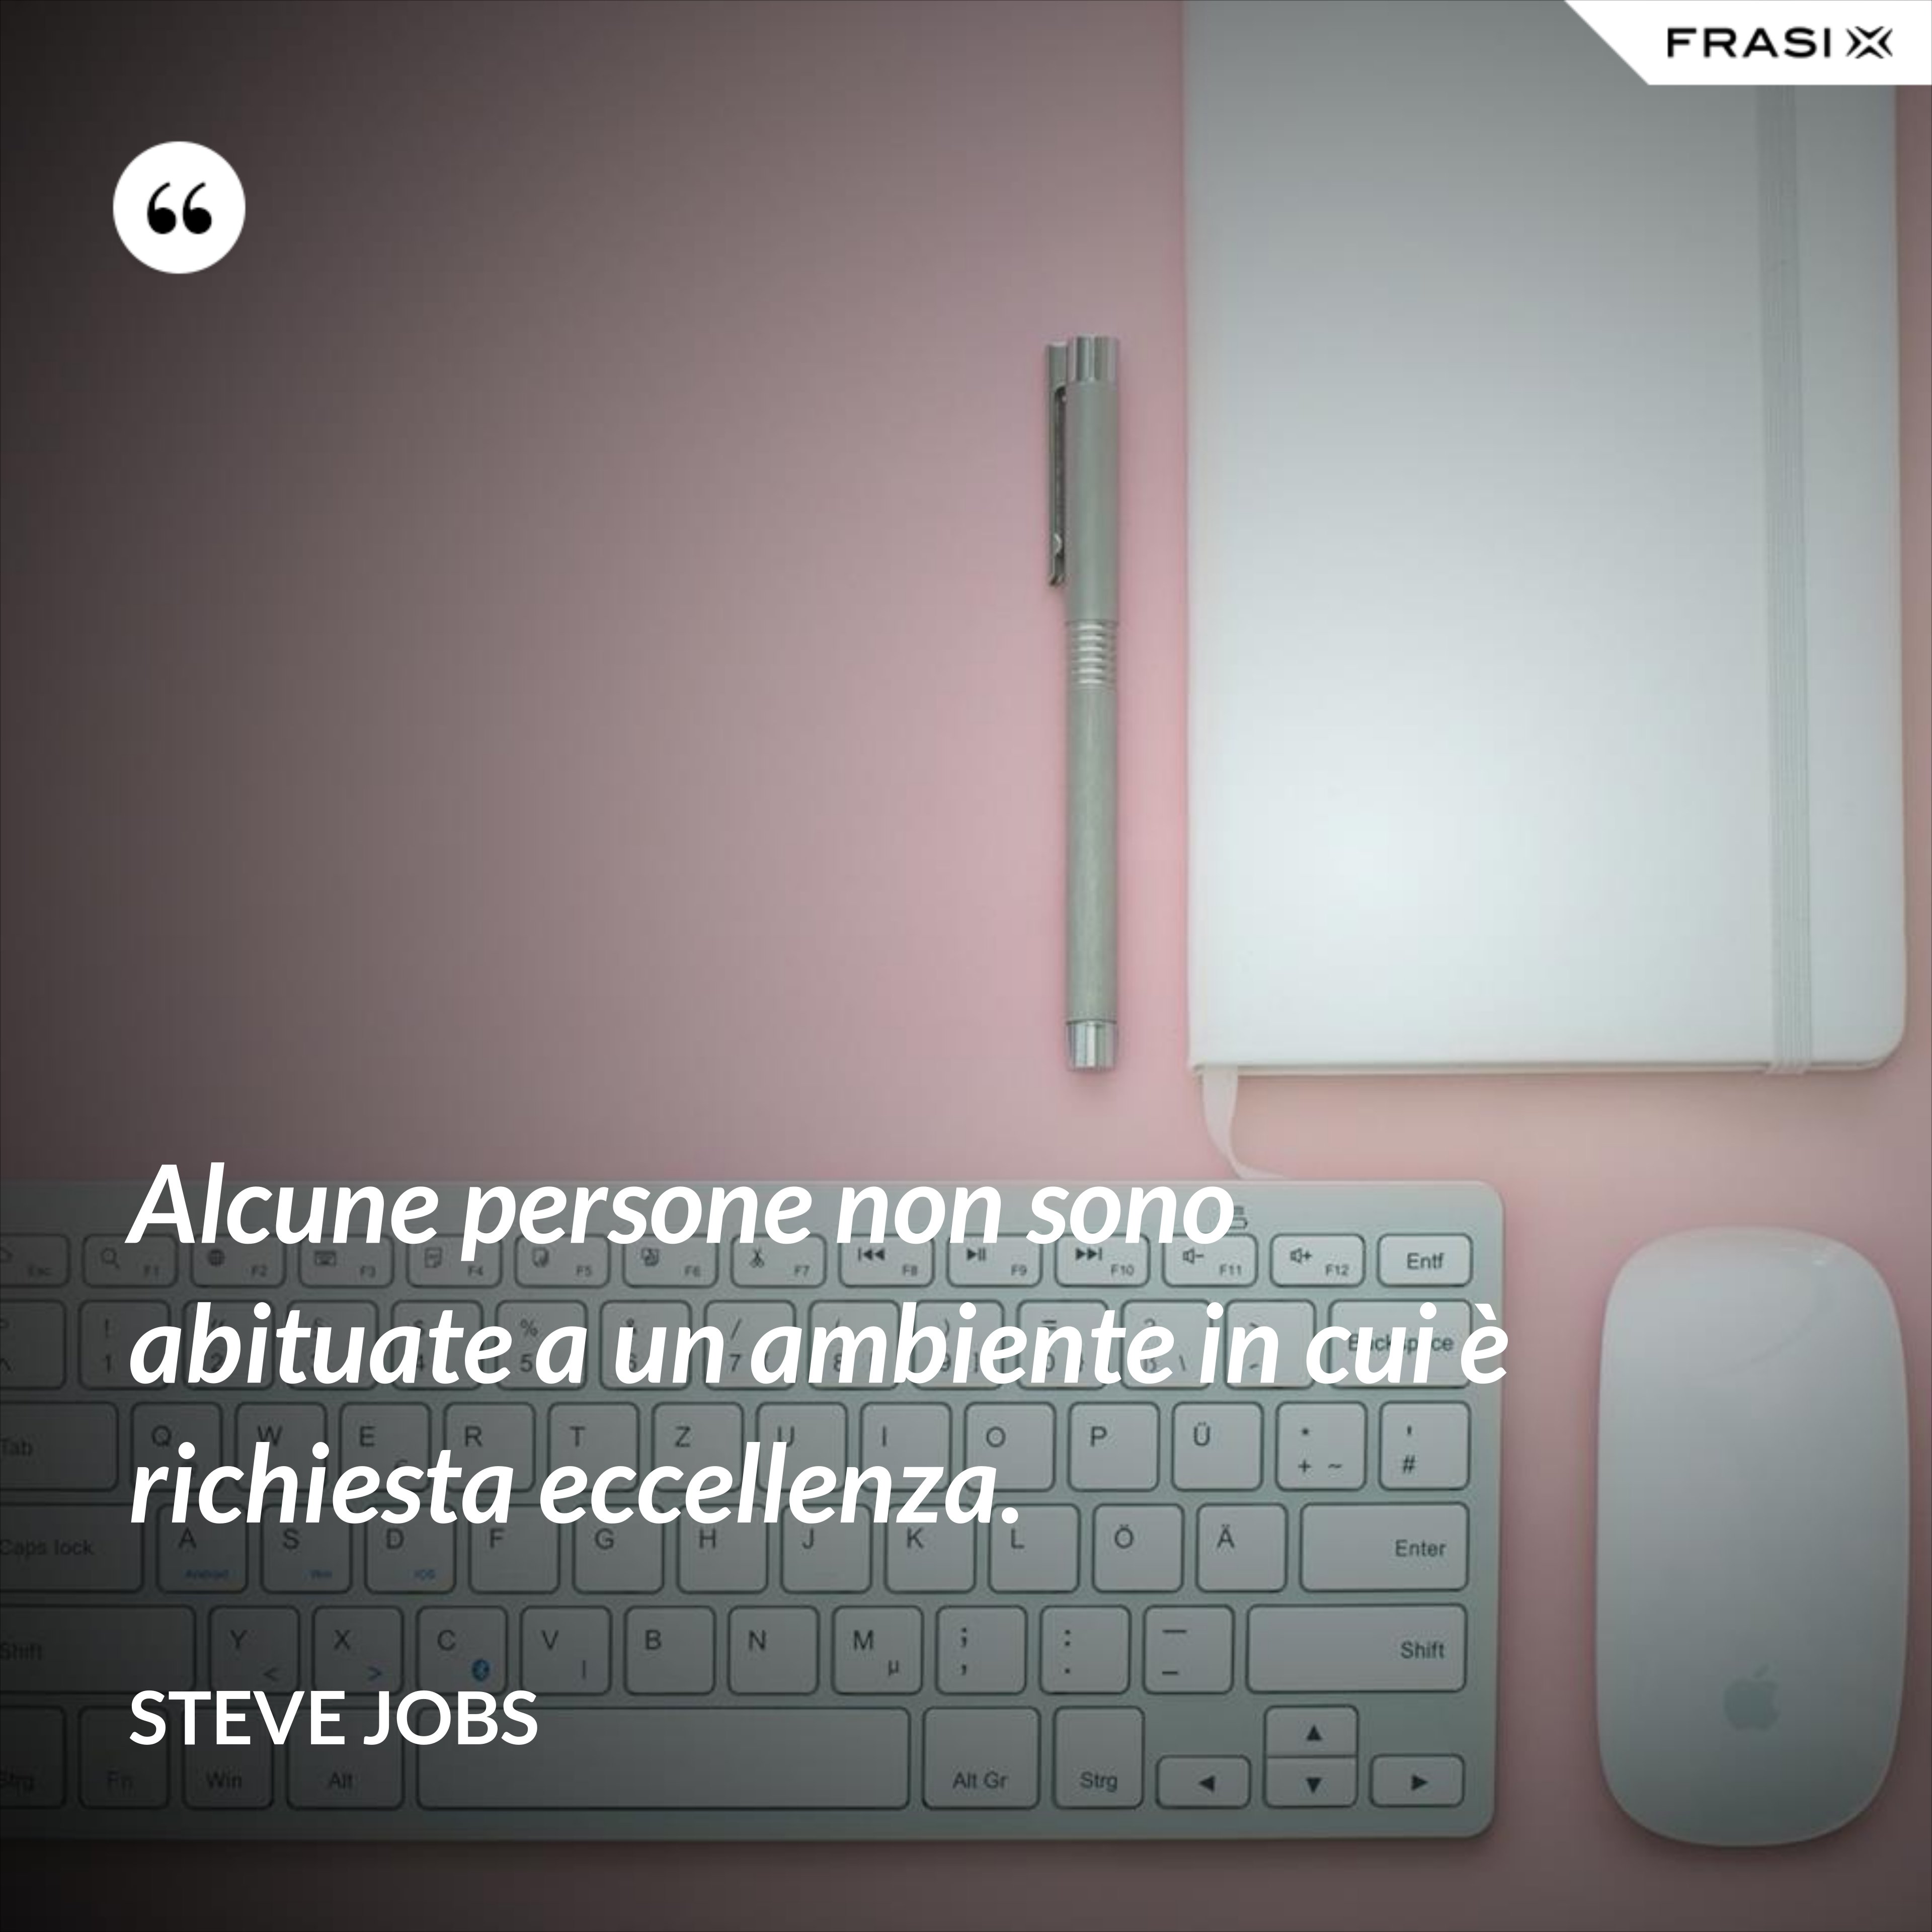 Alcune persone non sono abituate a un ambiente in cui è richiesta eccellenza. - Steve Jobs